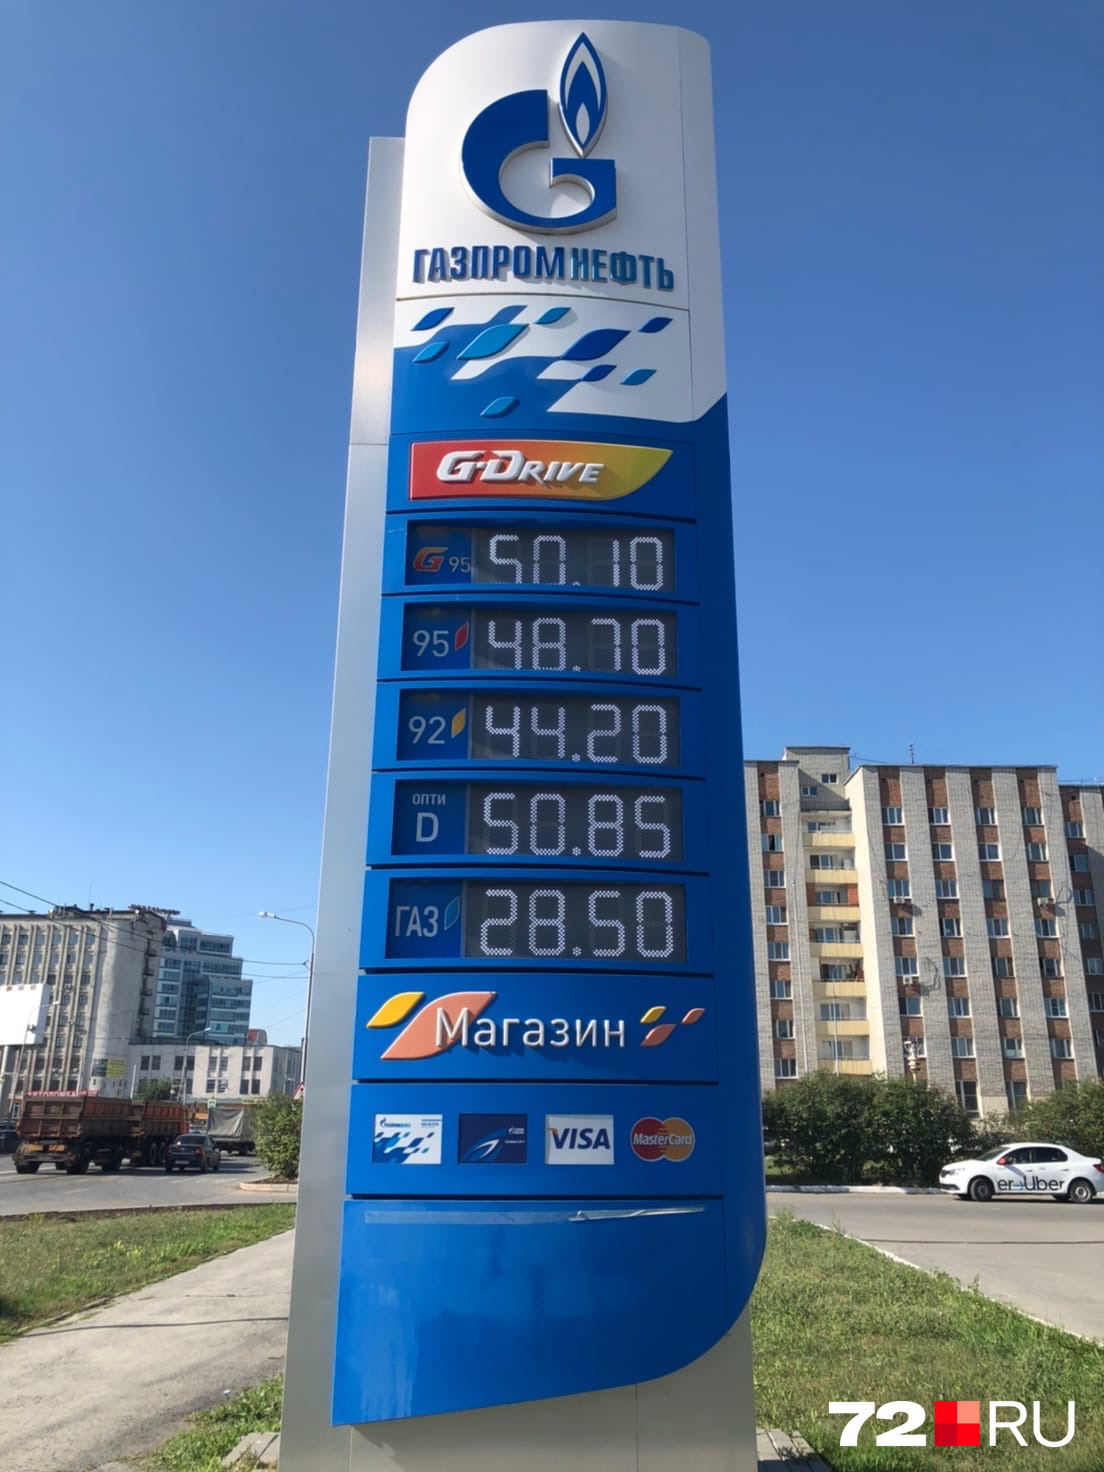 На заправке «Газпромнефть» цена увеличилась на 2,5 рубля. В конце прошлой недели топливо здесь стоило 26,5 рубля